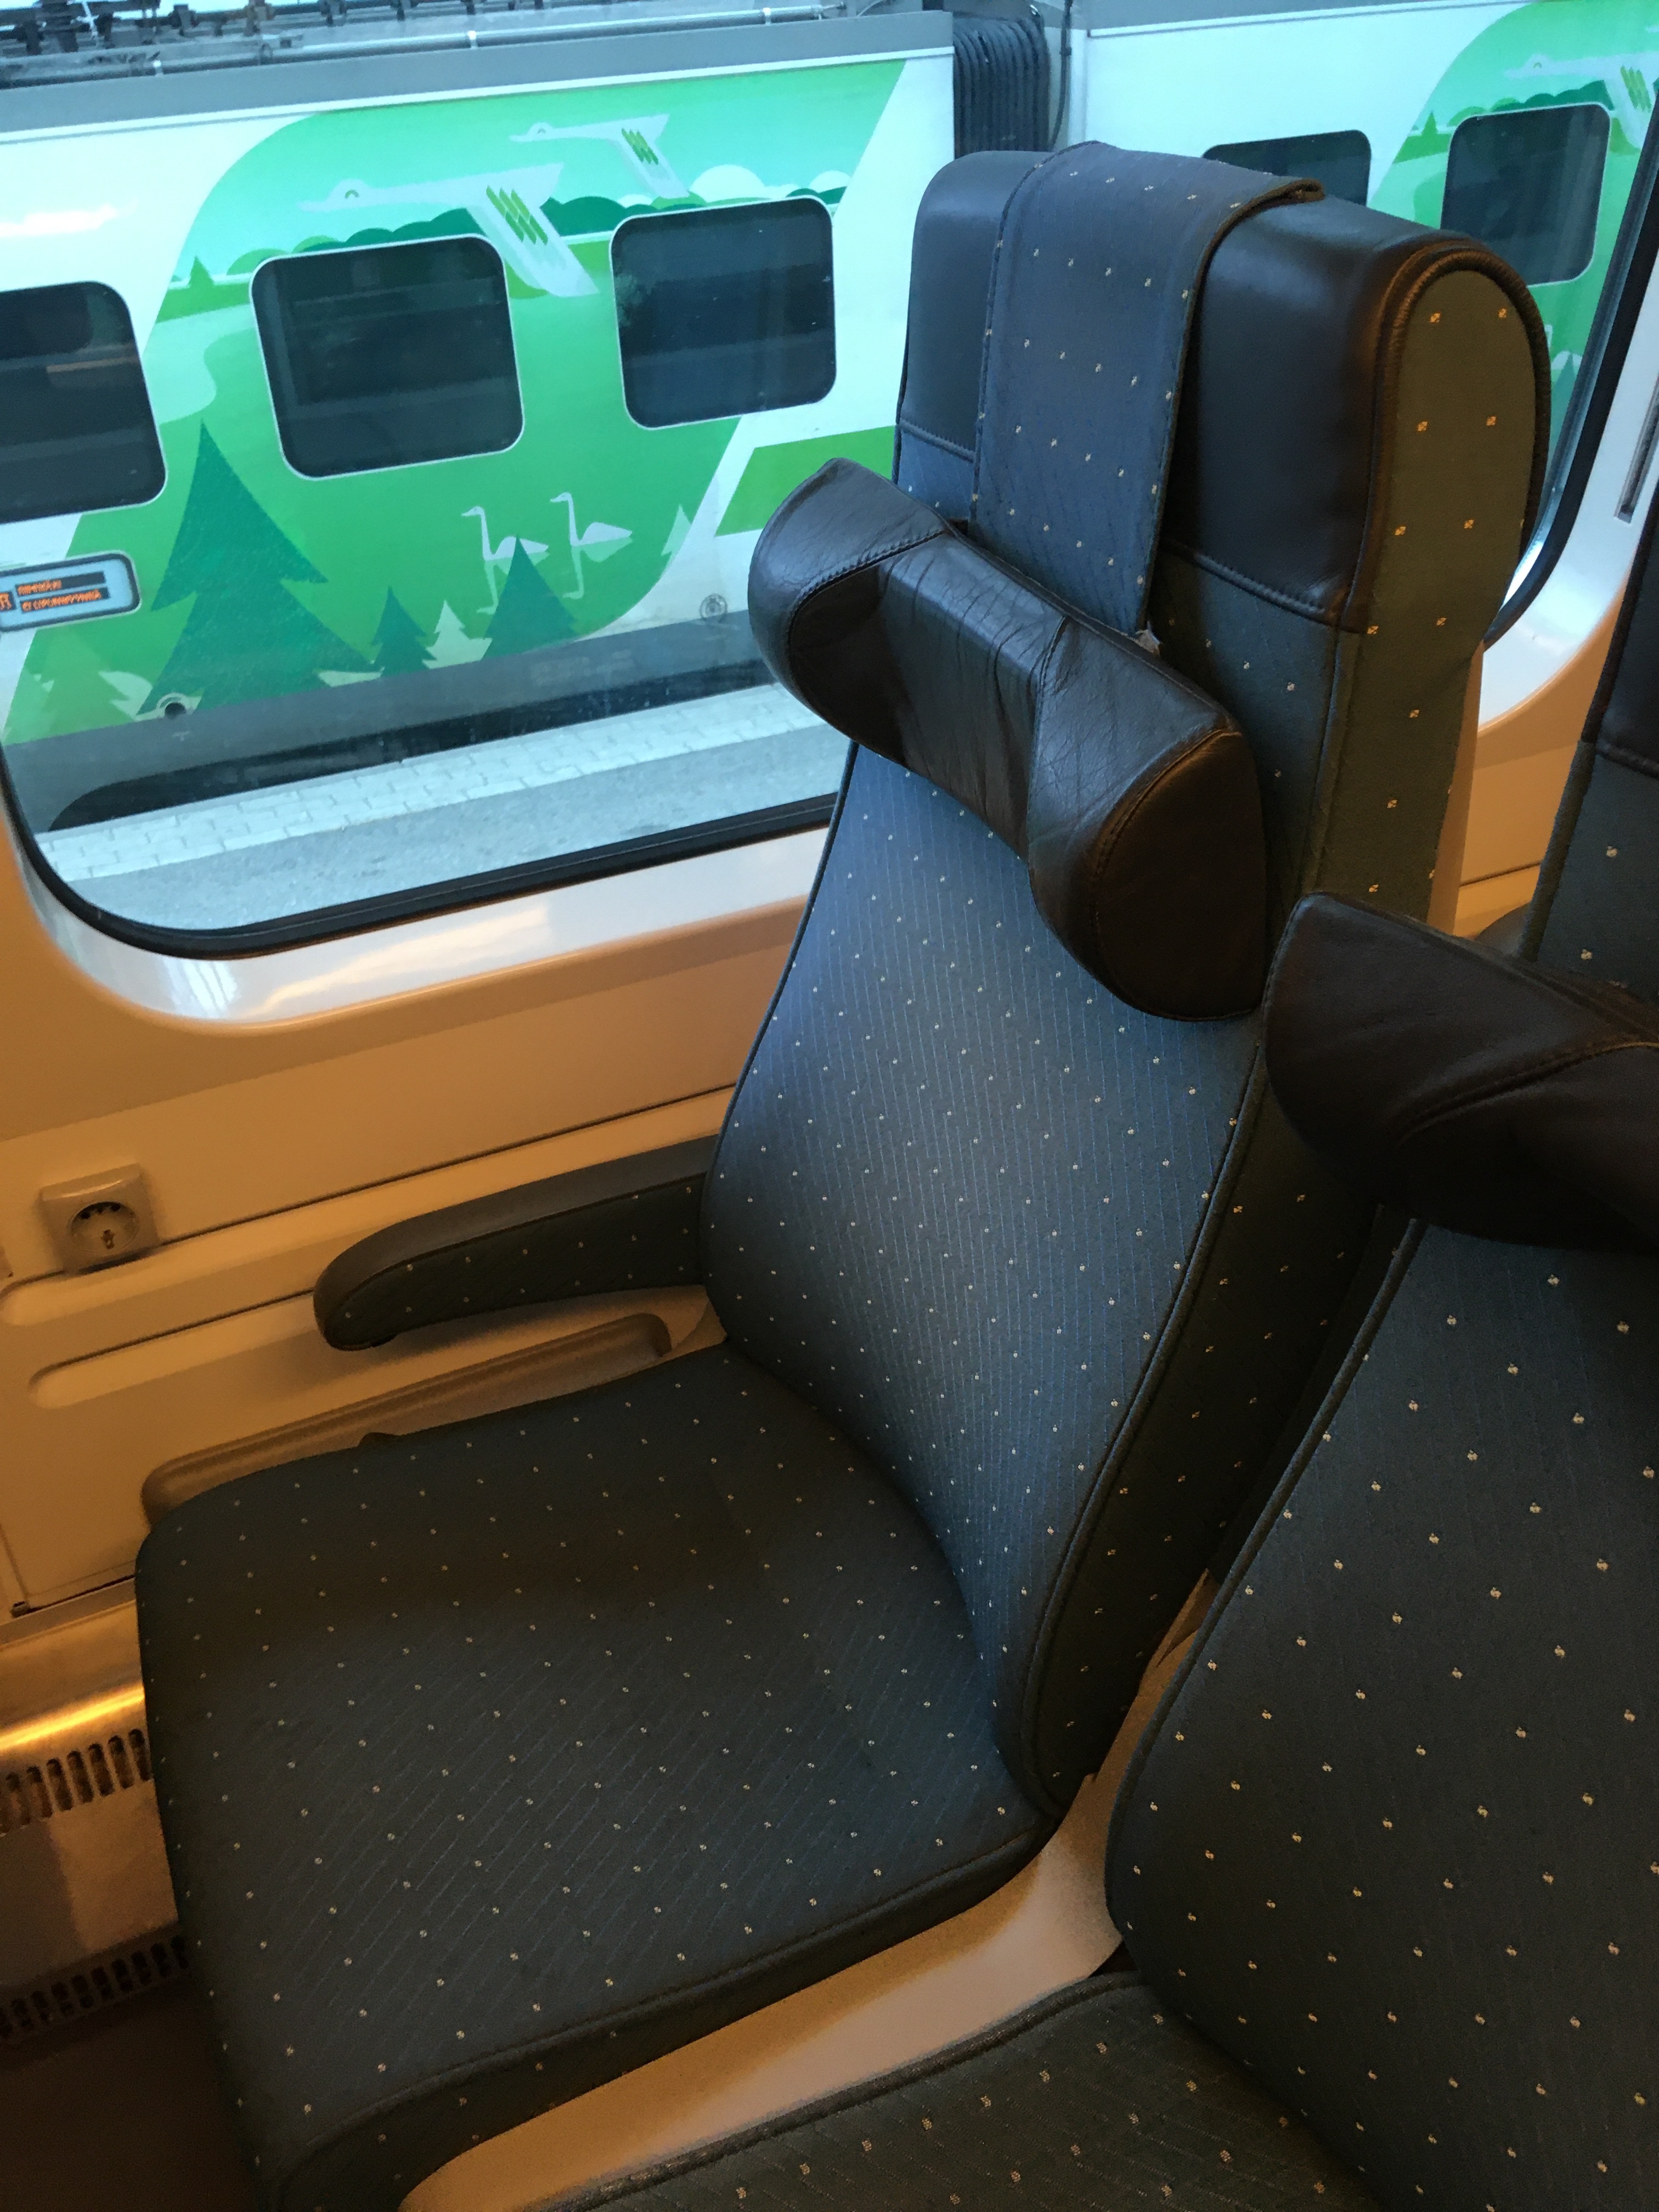 VR Helsinki - Joenssu Seating aboard InterCity 11, Eko Class Upper Deck